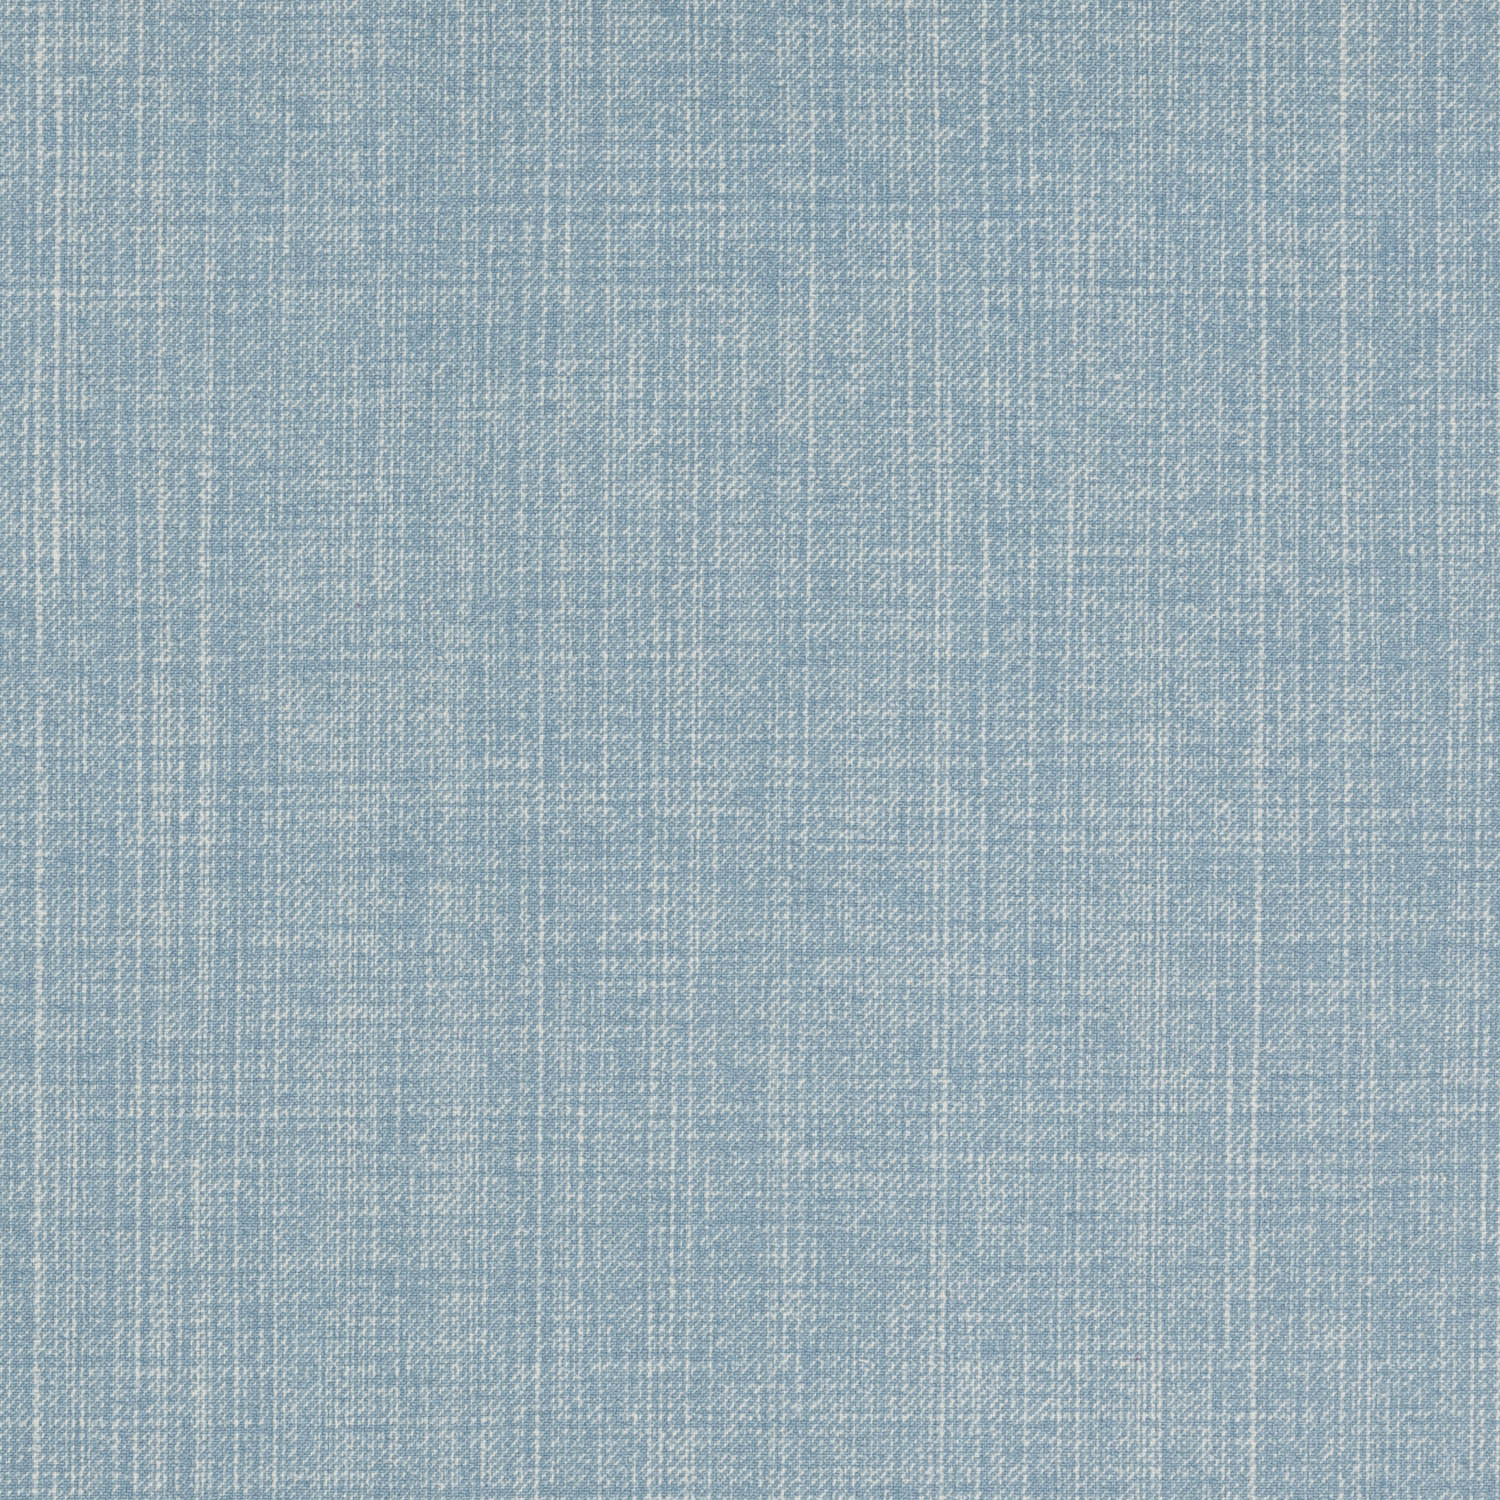 l-108-blue-fermoie-plain-cotton-1.jpg